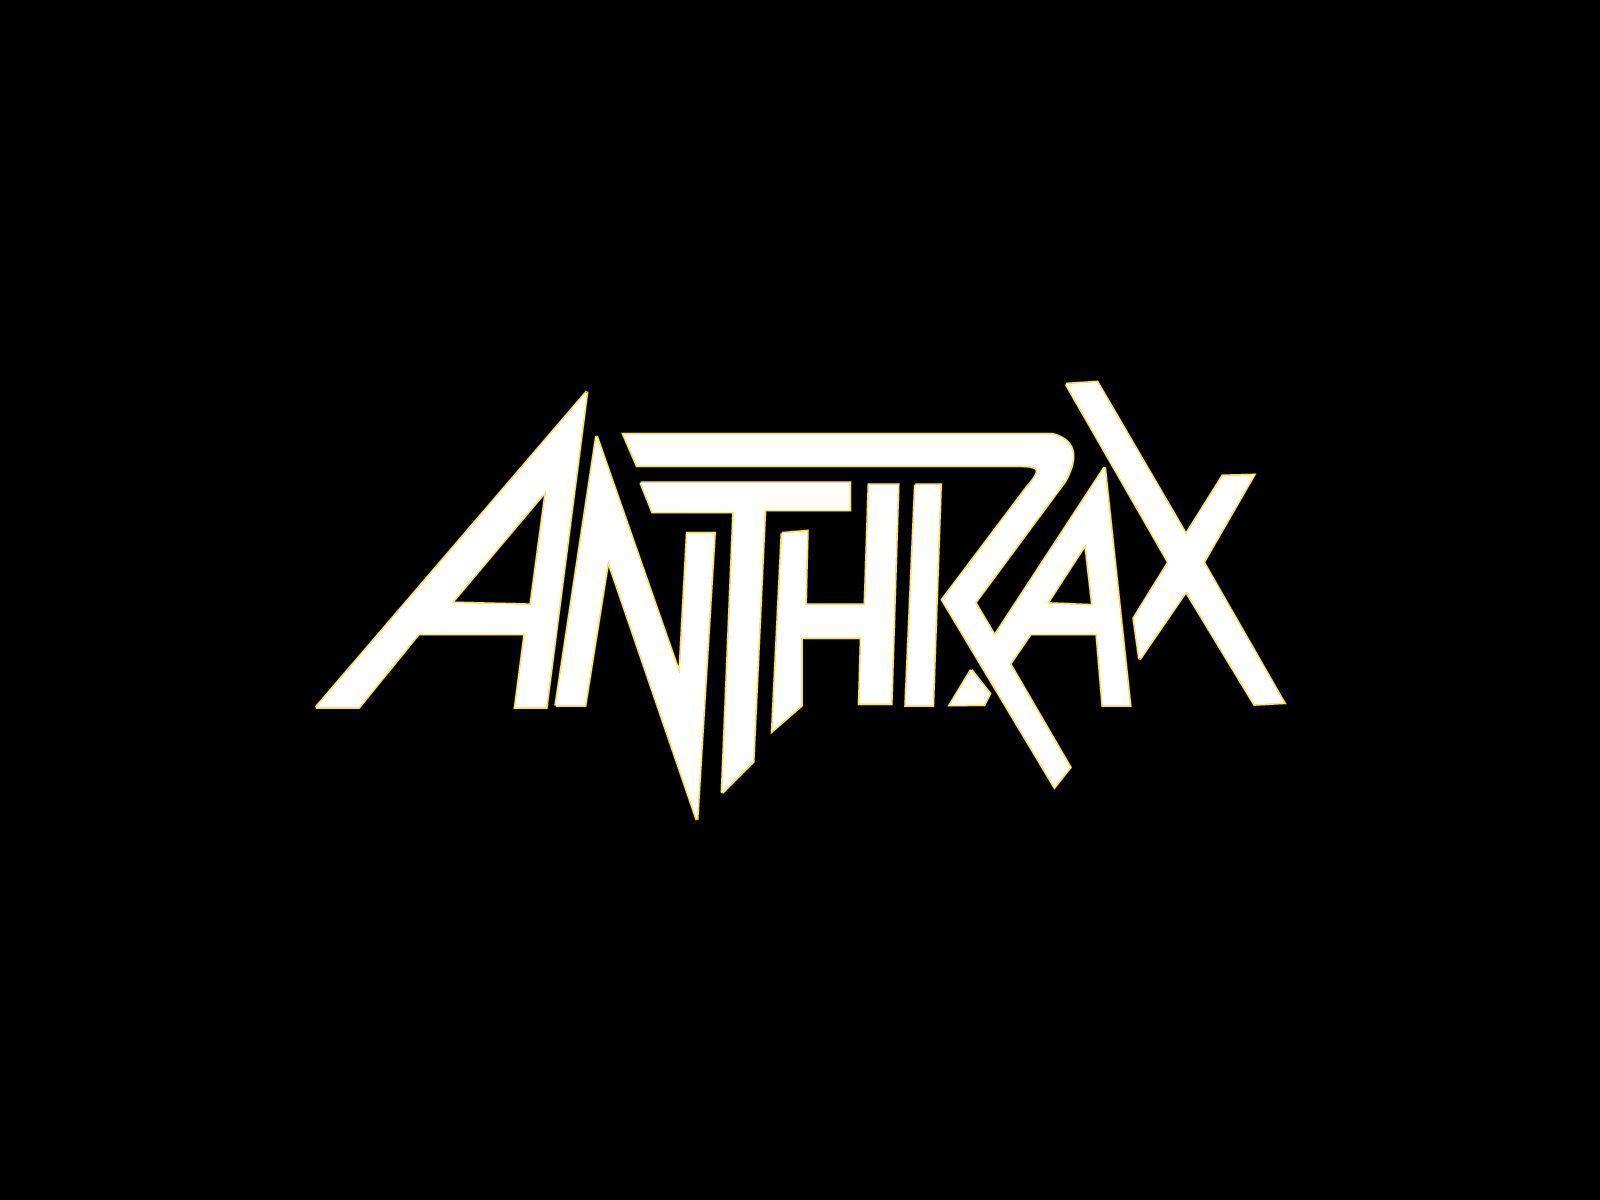 Anthrax logo and Anthrax wallpaper. Band logos band logos